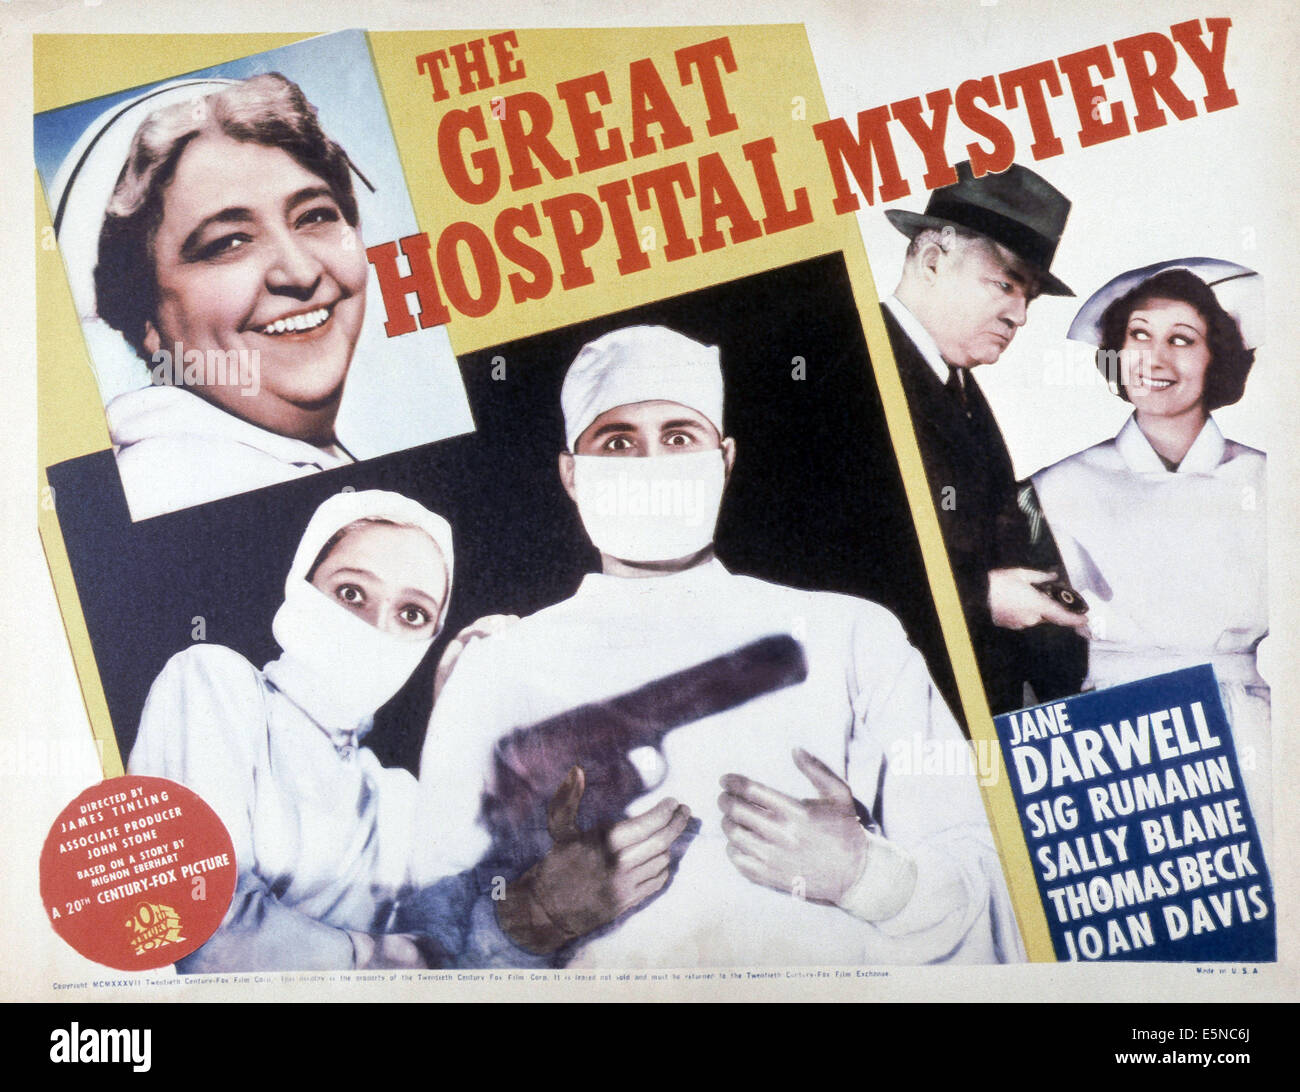 Le grand mystère de l'hôpital, Jane Darwell (haut), masqués par la gauche : Sally Blane, Thomas Beck, de gauche à droite : Wade Boteler, Joan Banque D'Images